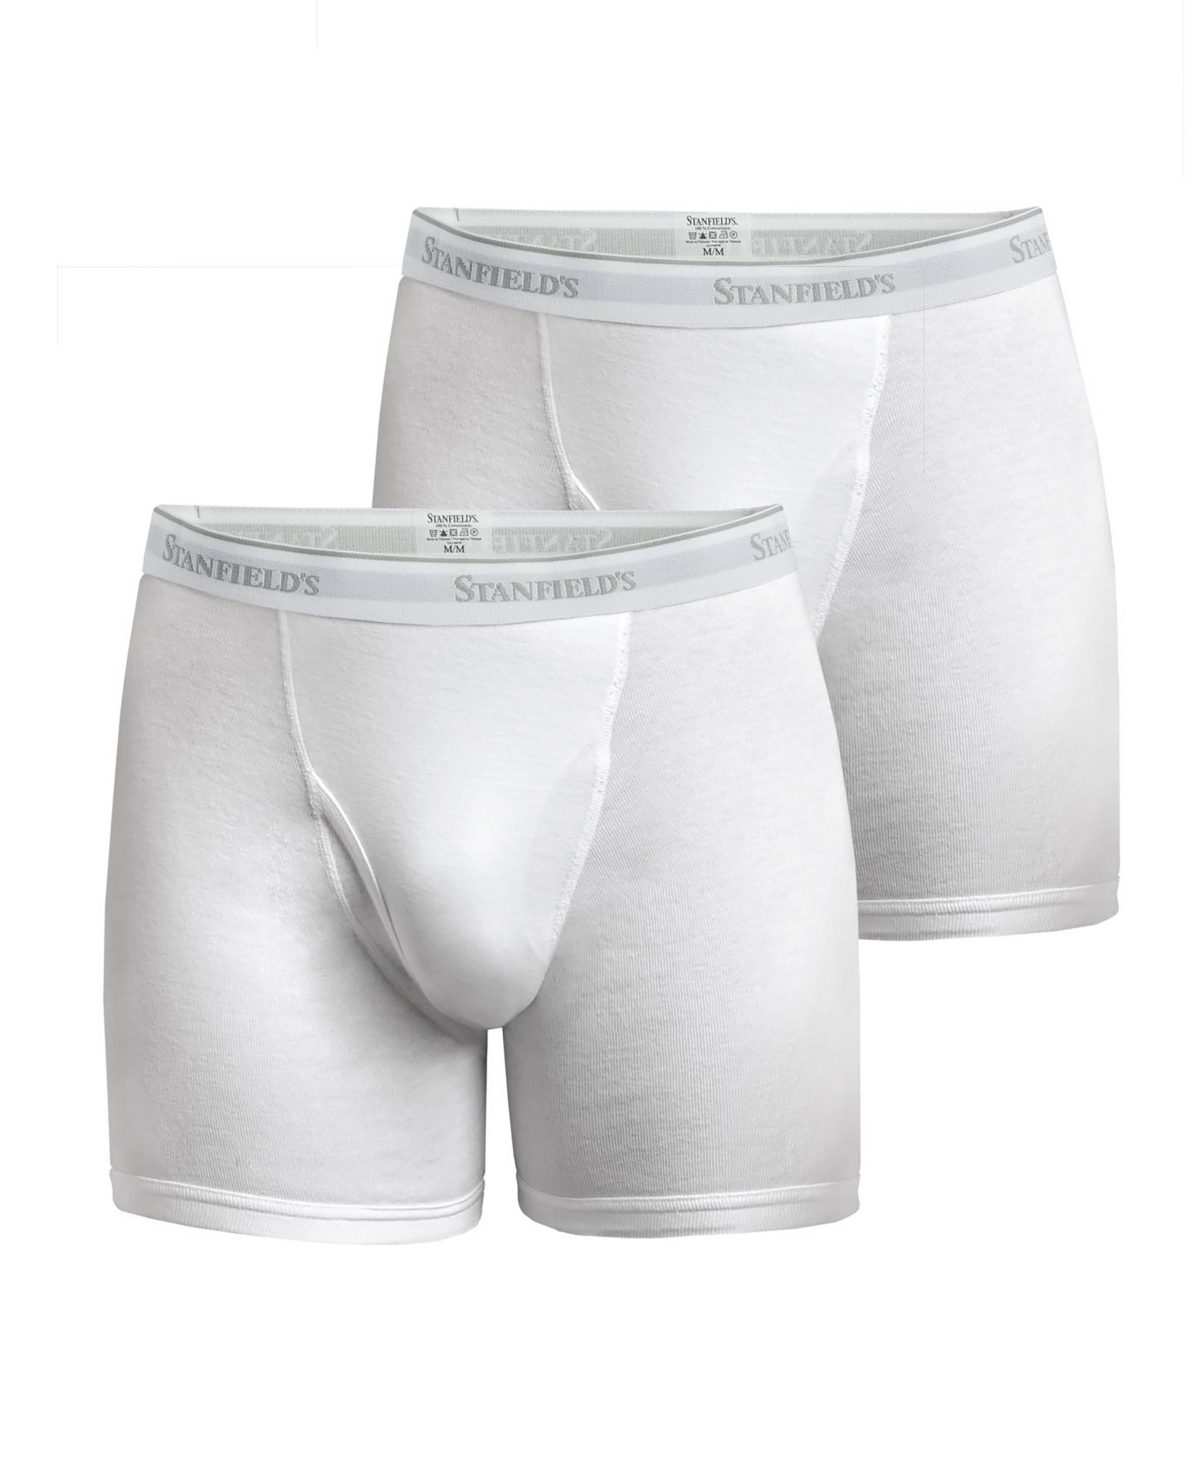 Premium Cotton Men's 2 Pack Boxer Brief Underwear - Heather Gr